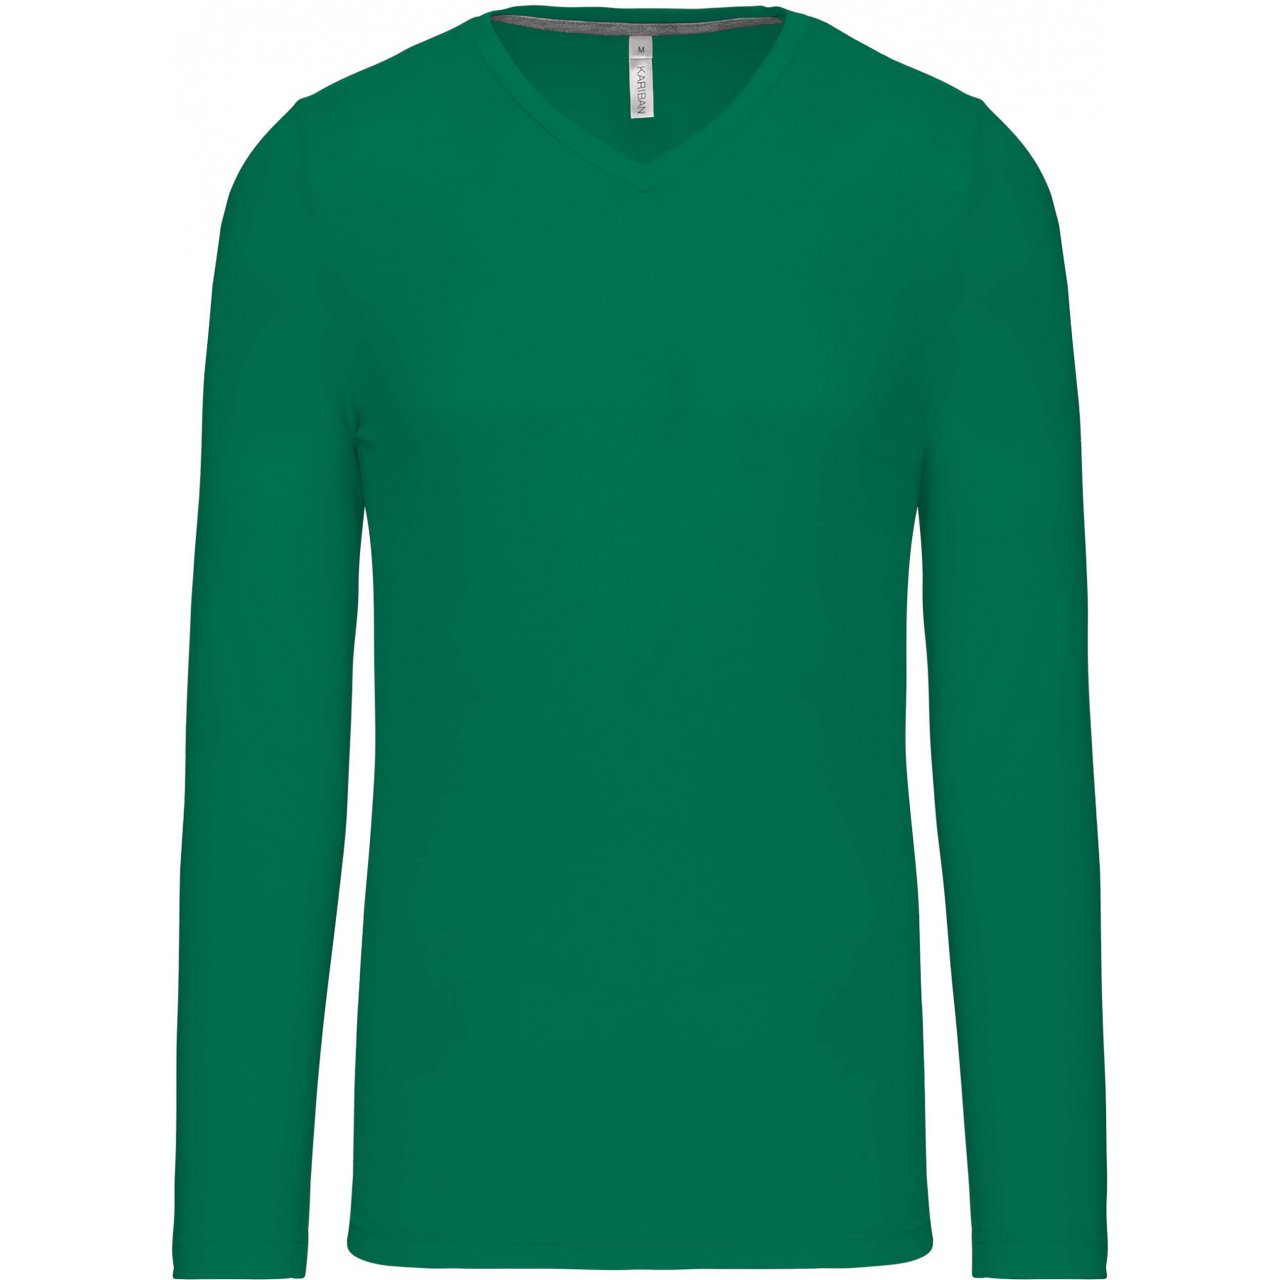 Pánské tričko Kariban dlouhý rukáv V-neck - zelené, S